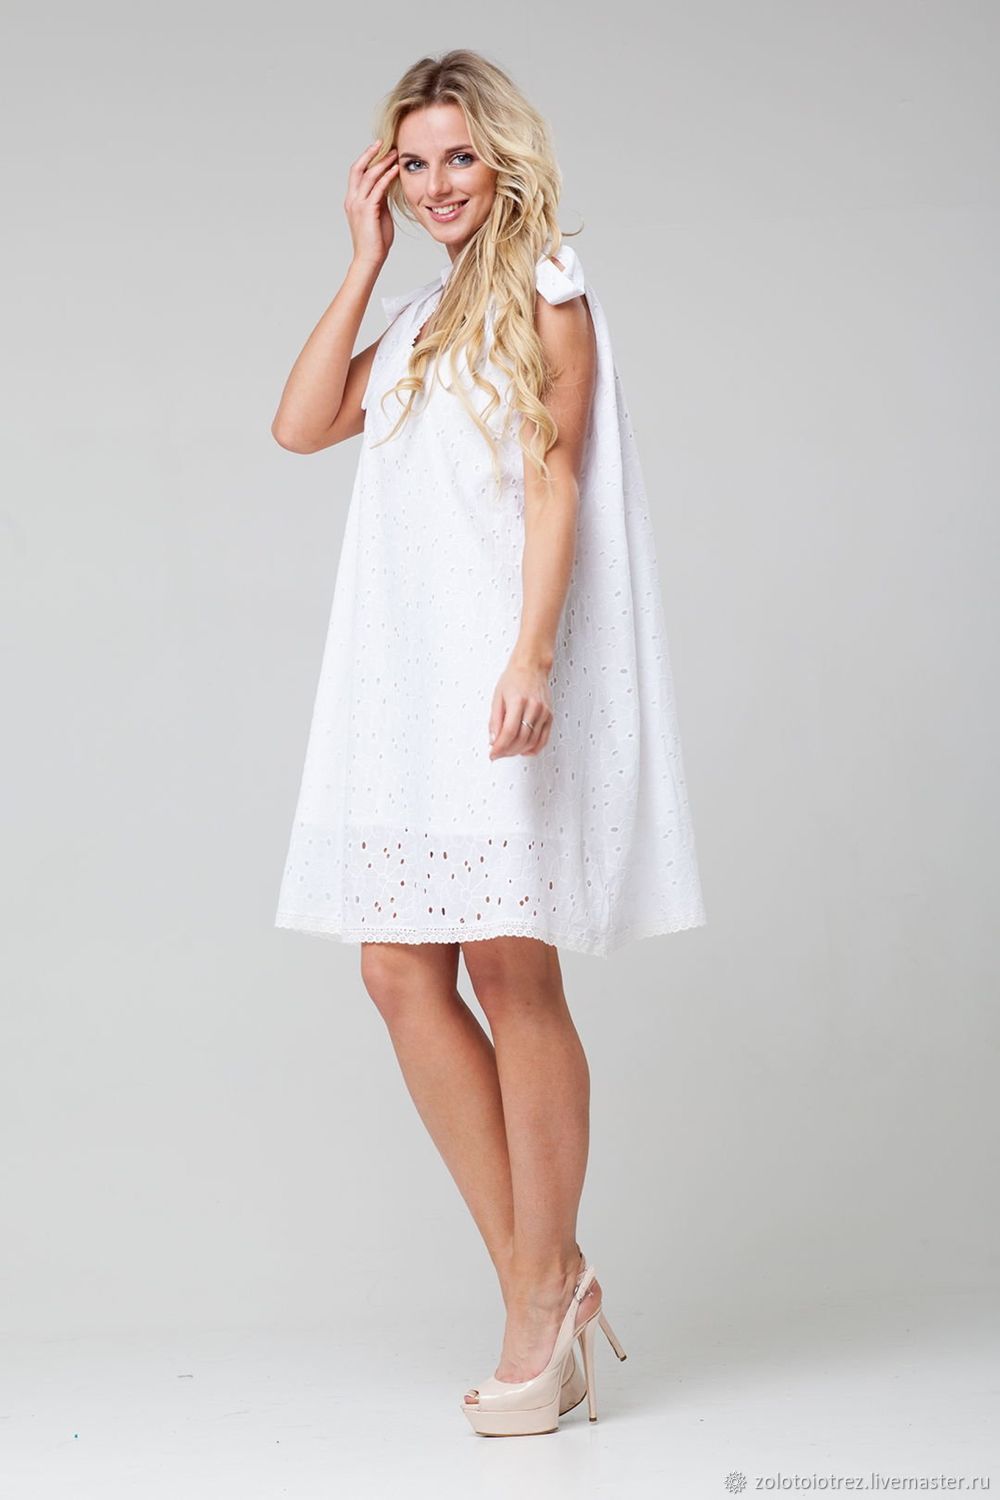 Купить платье хлопок на вайлдберриз. Белое платье. Платье из шитья белое. Белое летнее платье. Хлопковое платье.